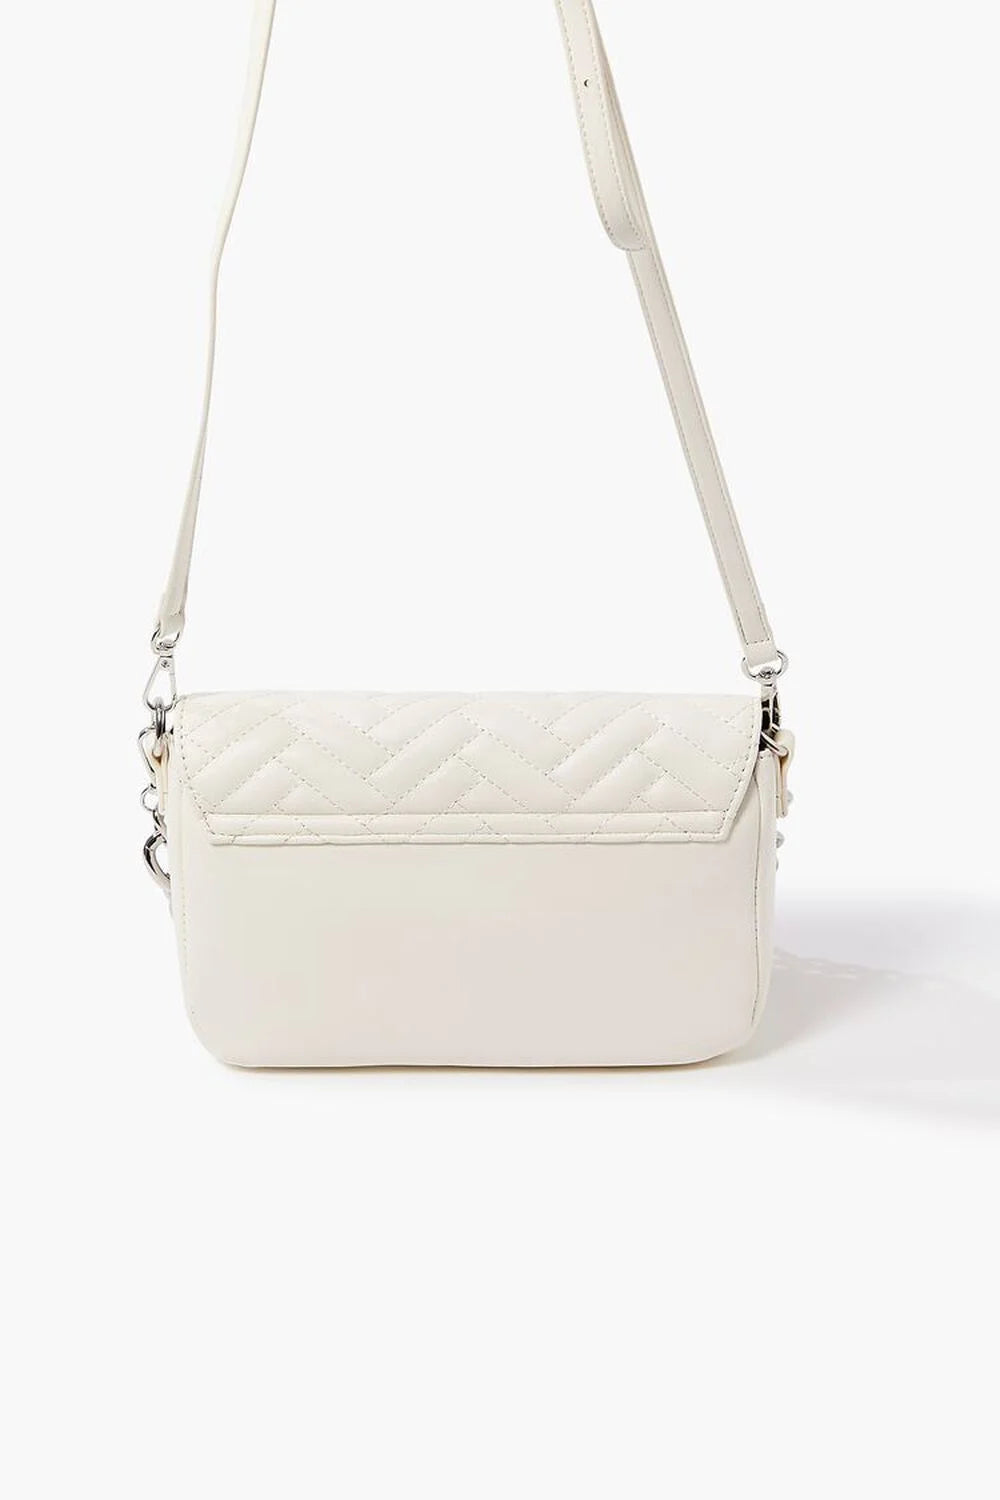 Small Fashion handbag